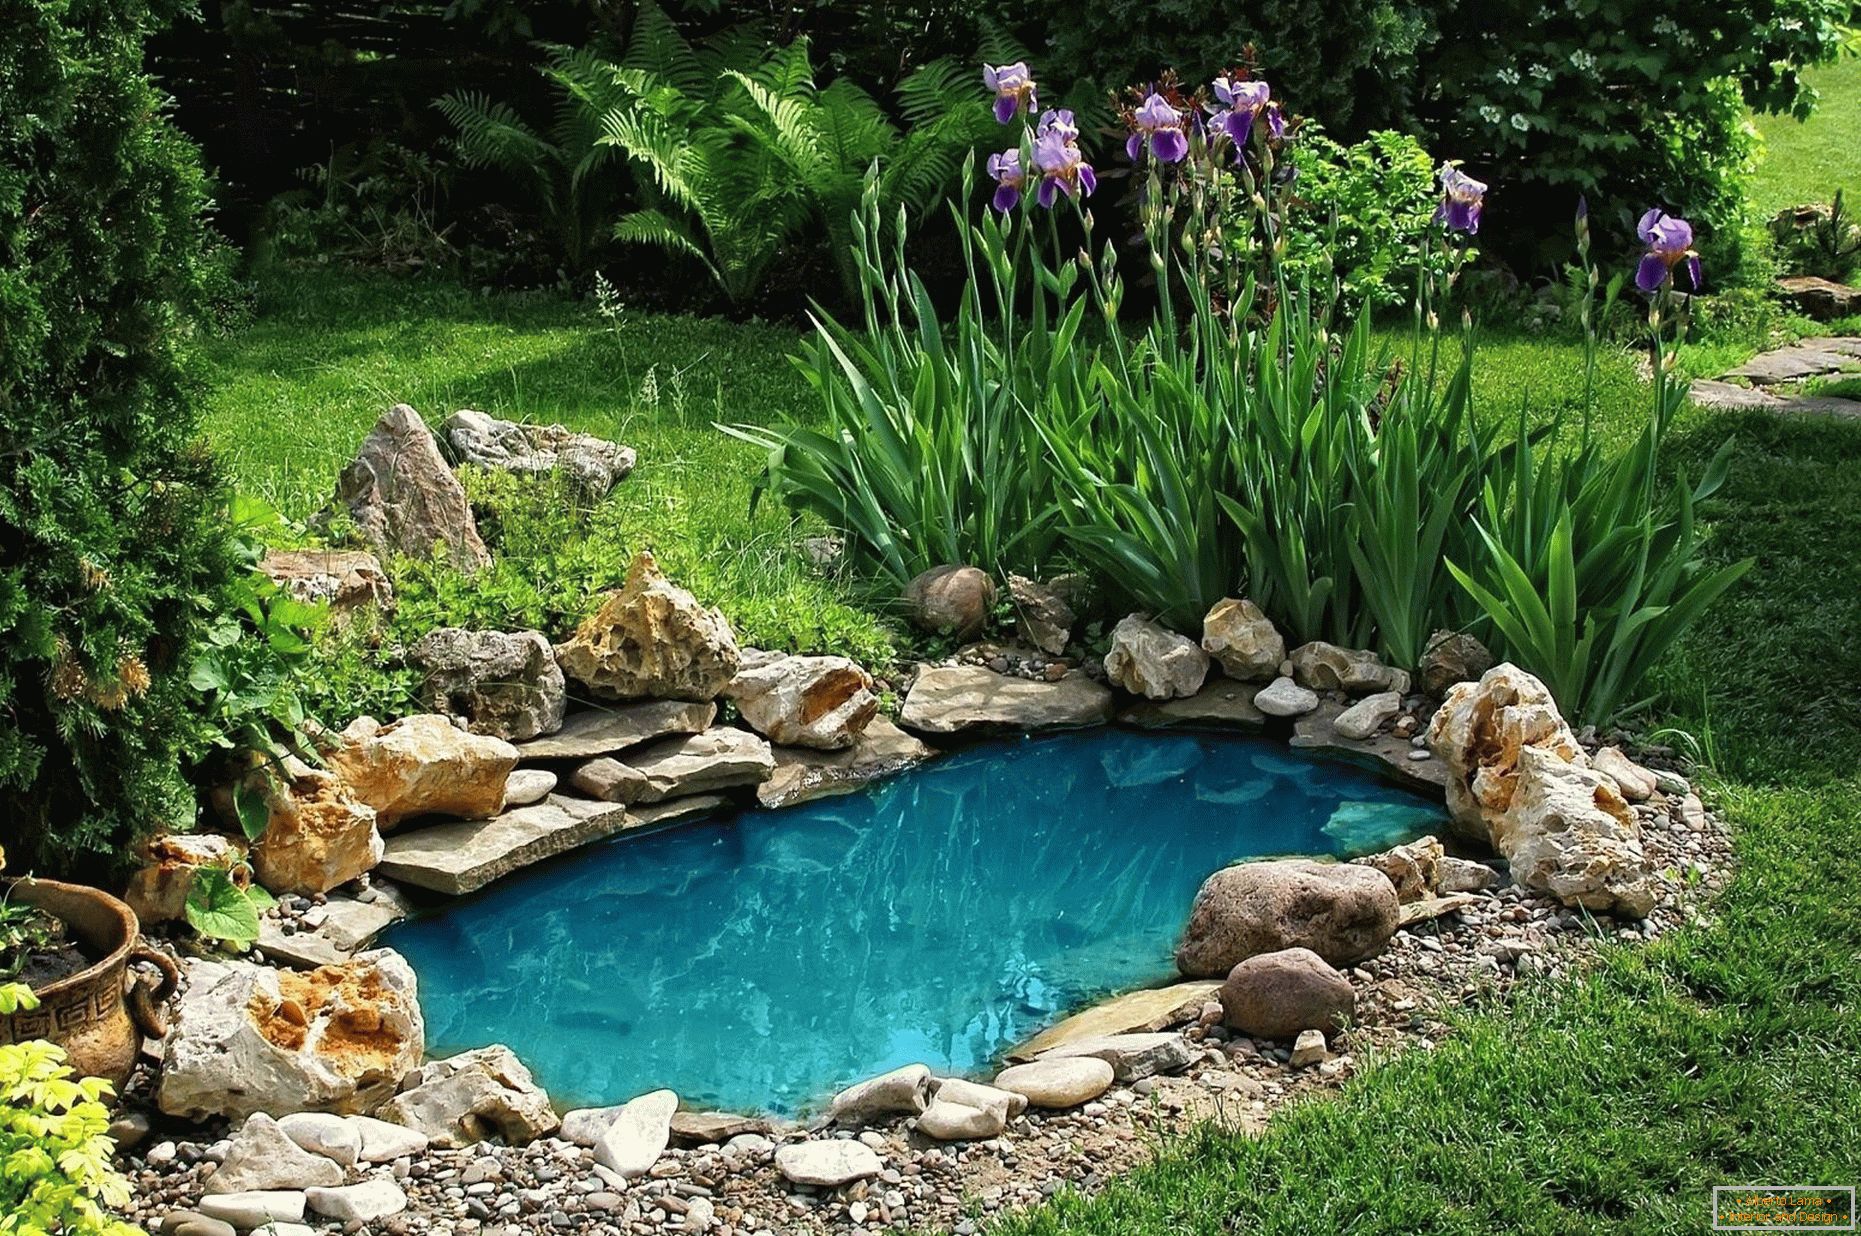 The pond with iris